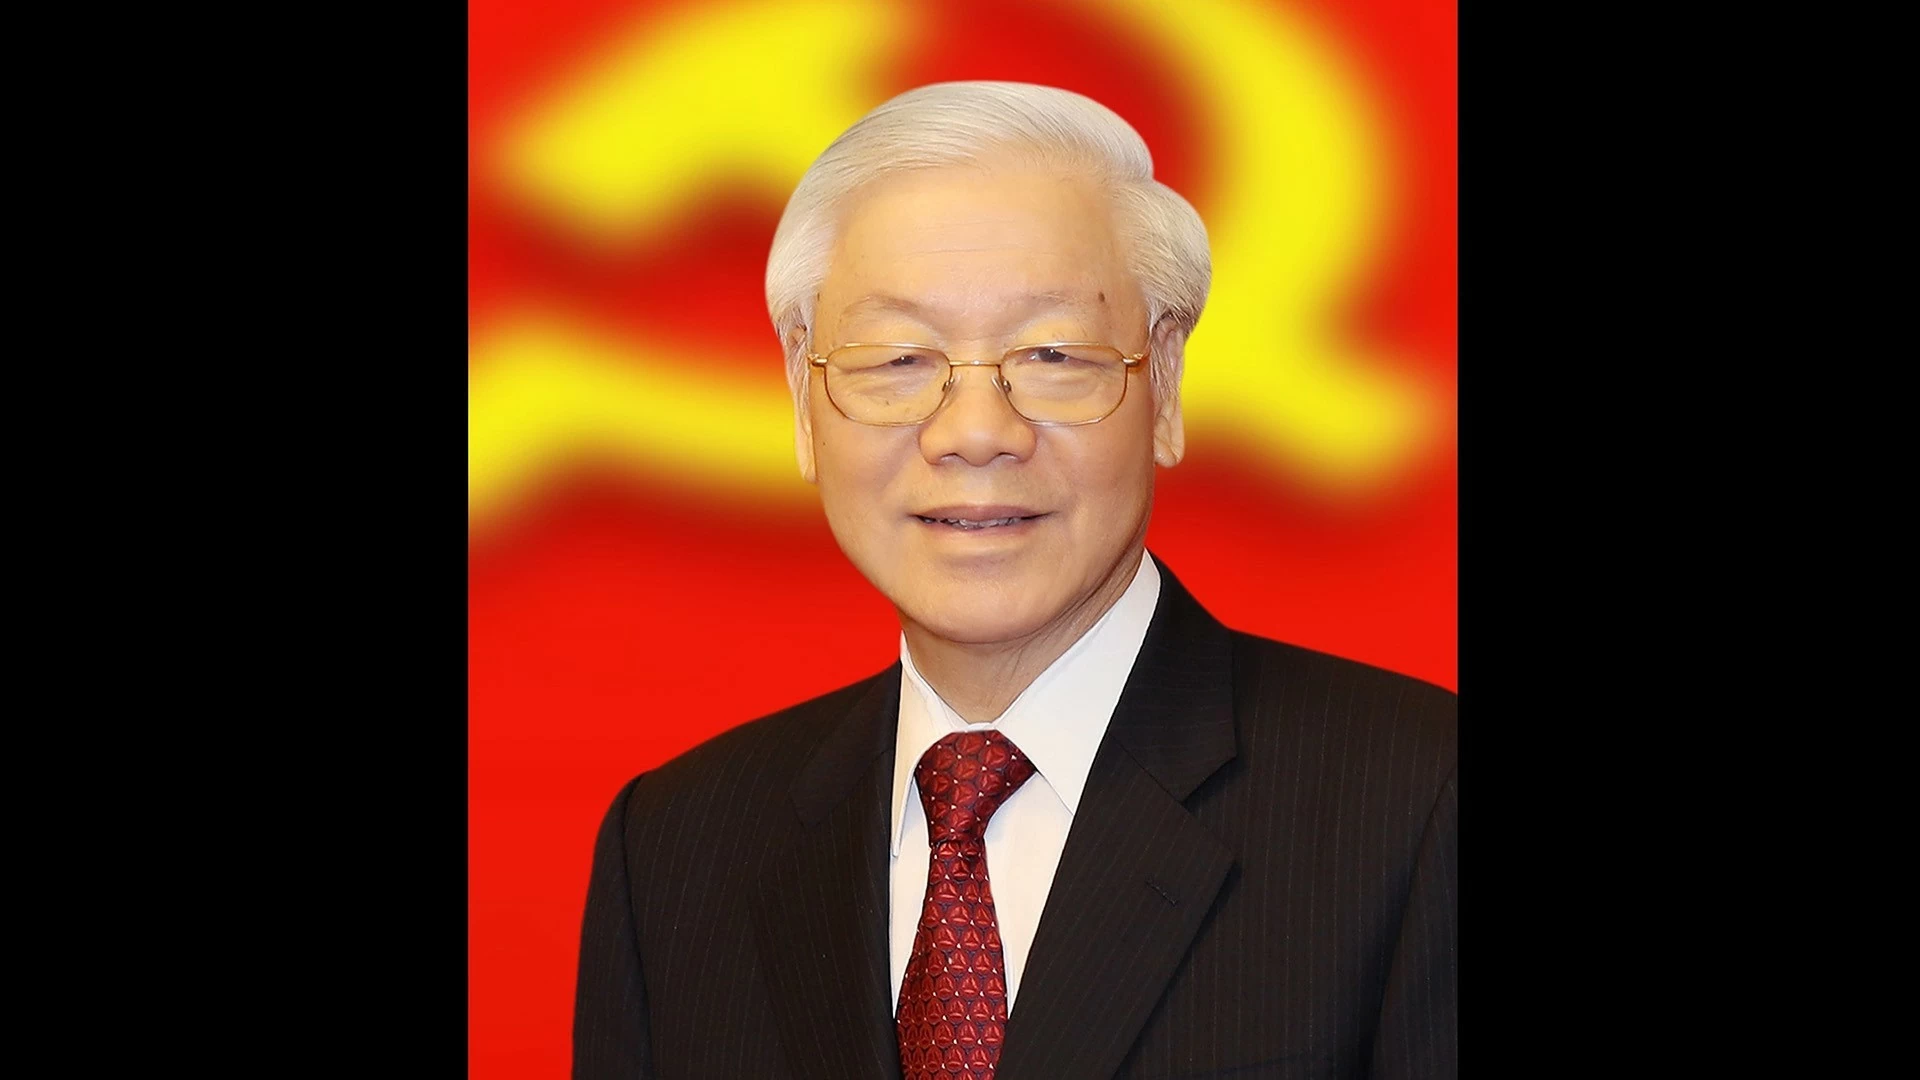 Phim tài liệu: Tổng Bí thư Nguyễn Phú Trọng - Nhà lãnh đạo kiên trung, trí tuệ và mẫu mực